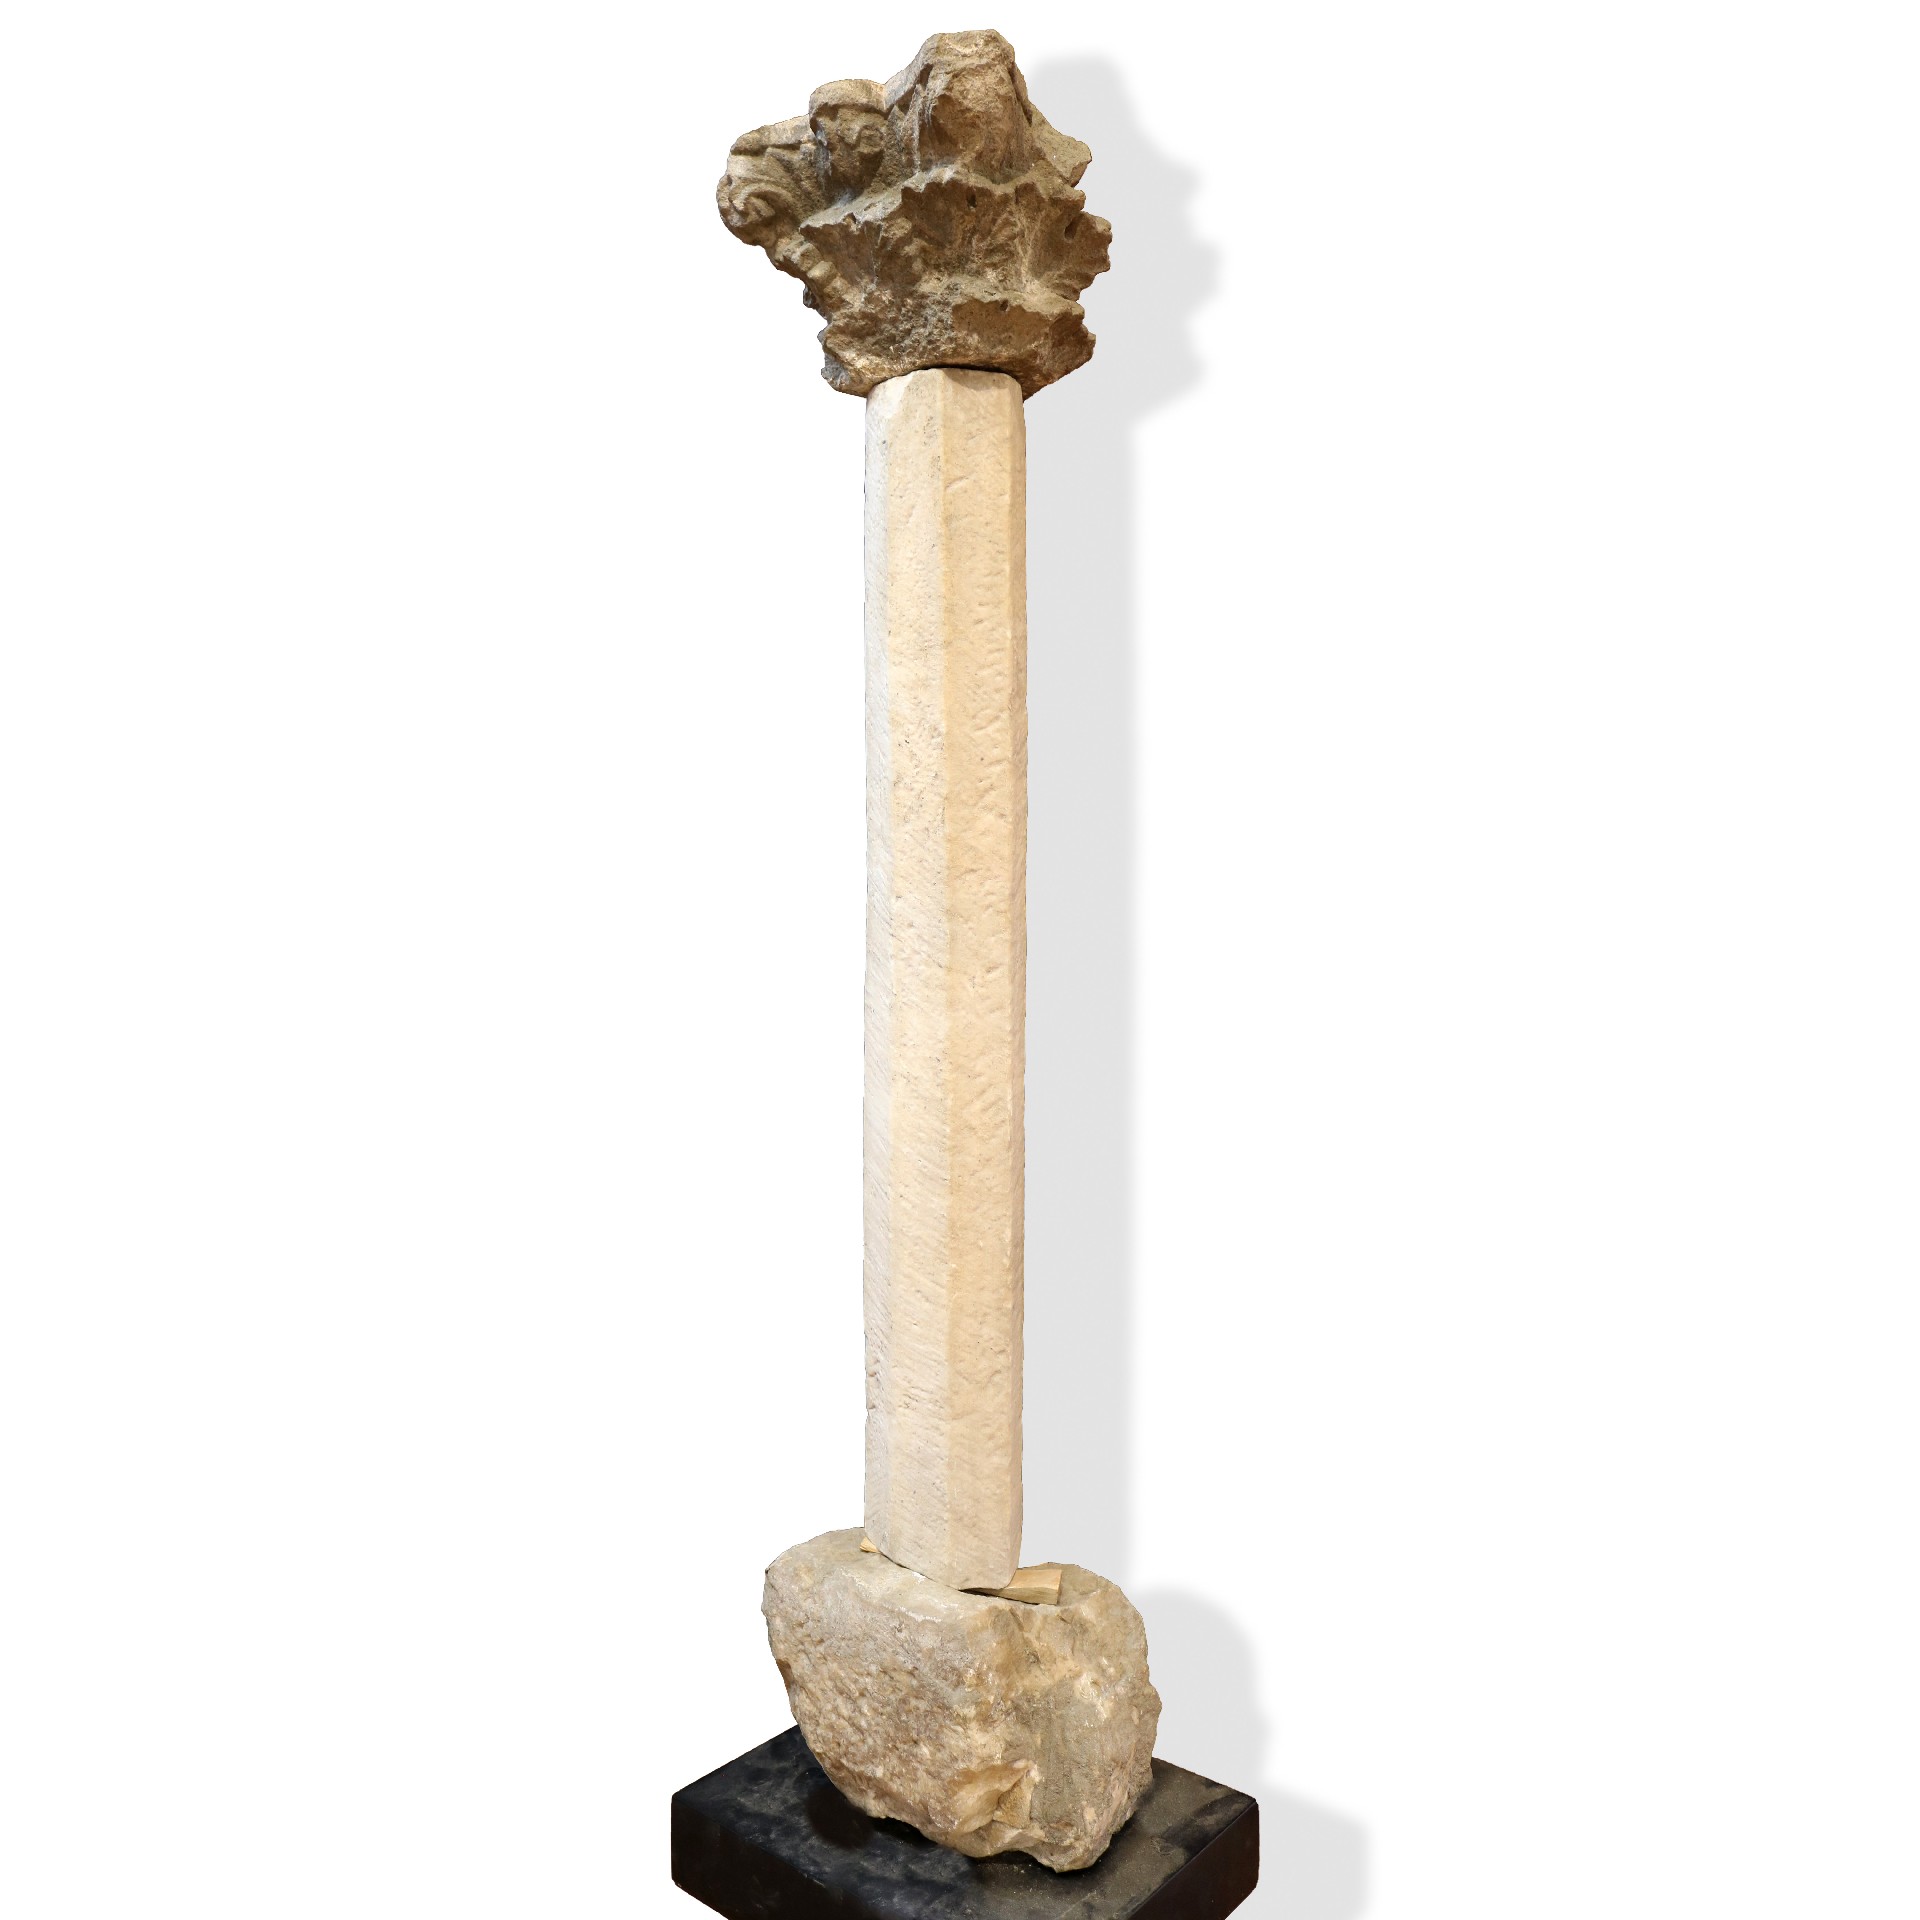 Colonna antica in marmo e pietra. - Colonne antiche - Architettura - Prodotti - Antichità Fiorillo